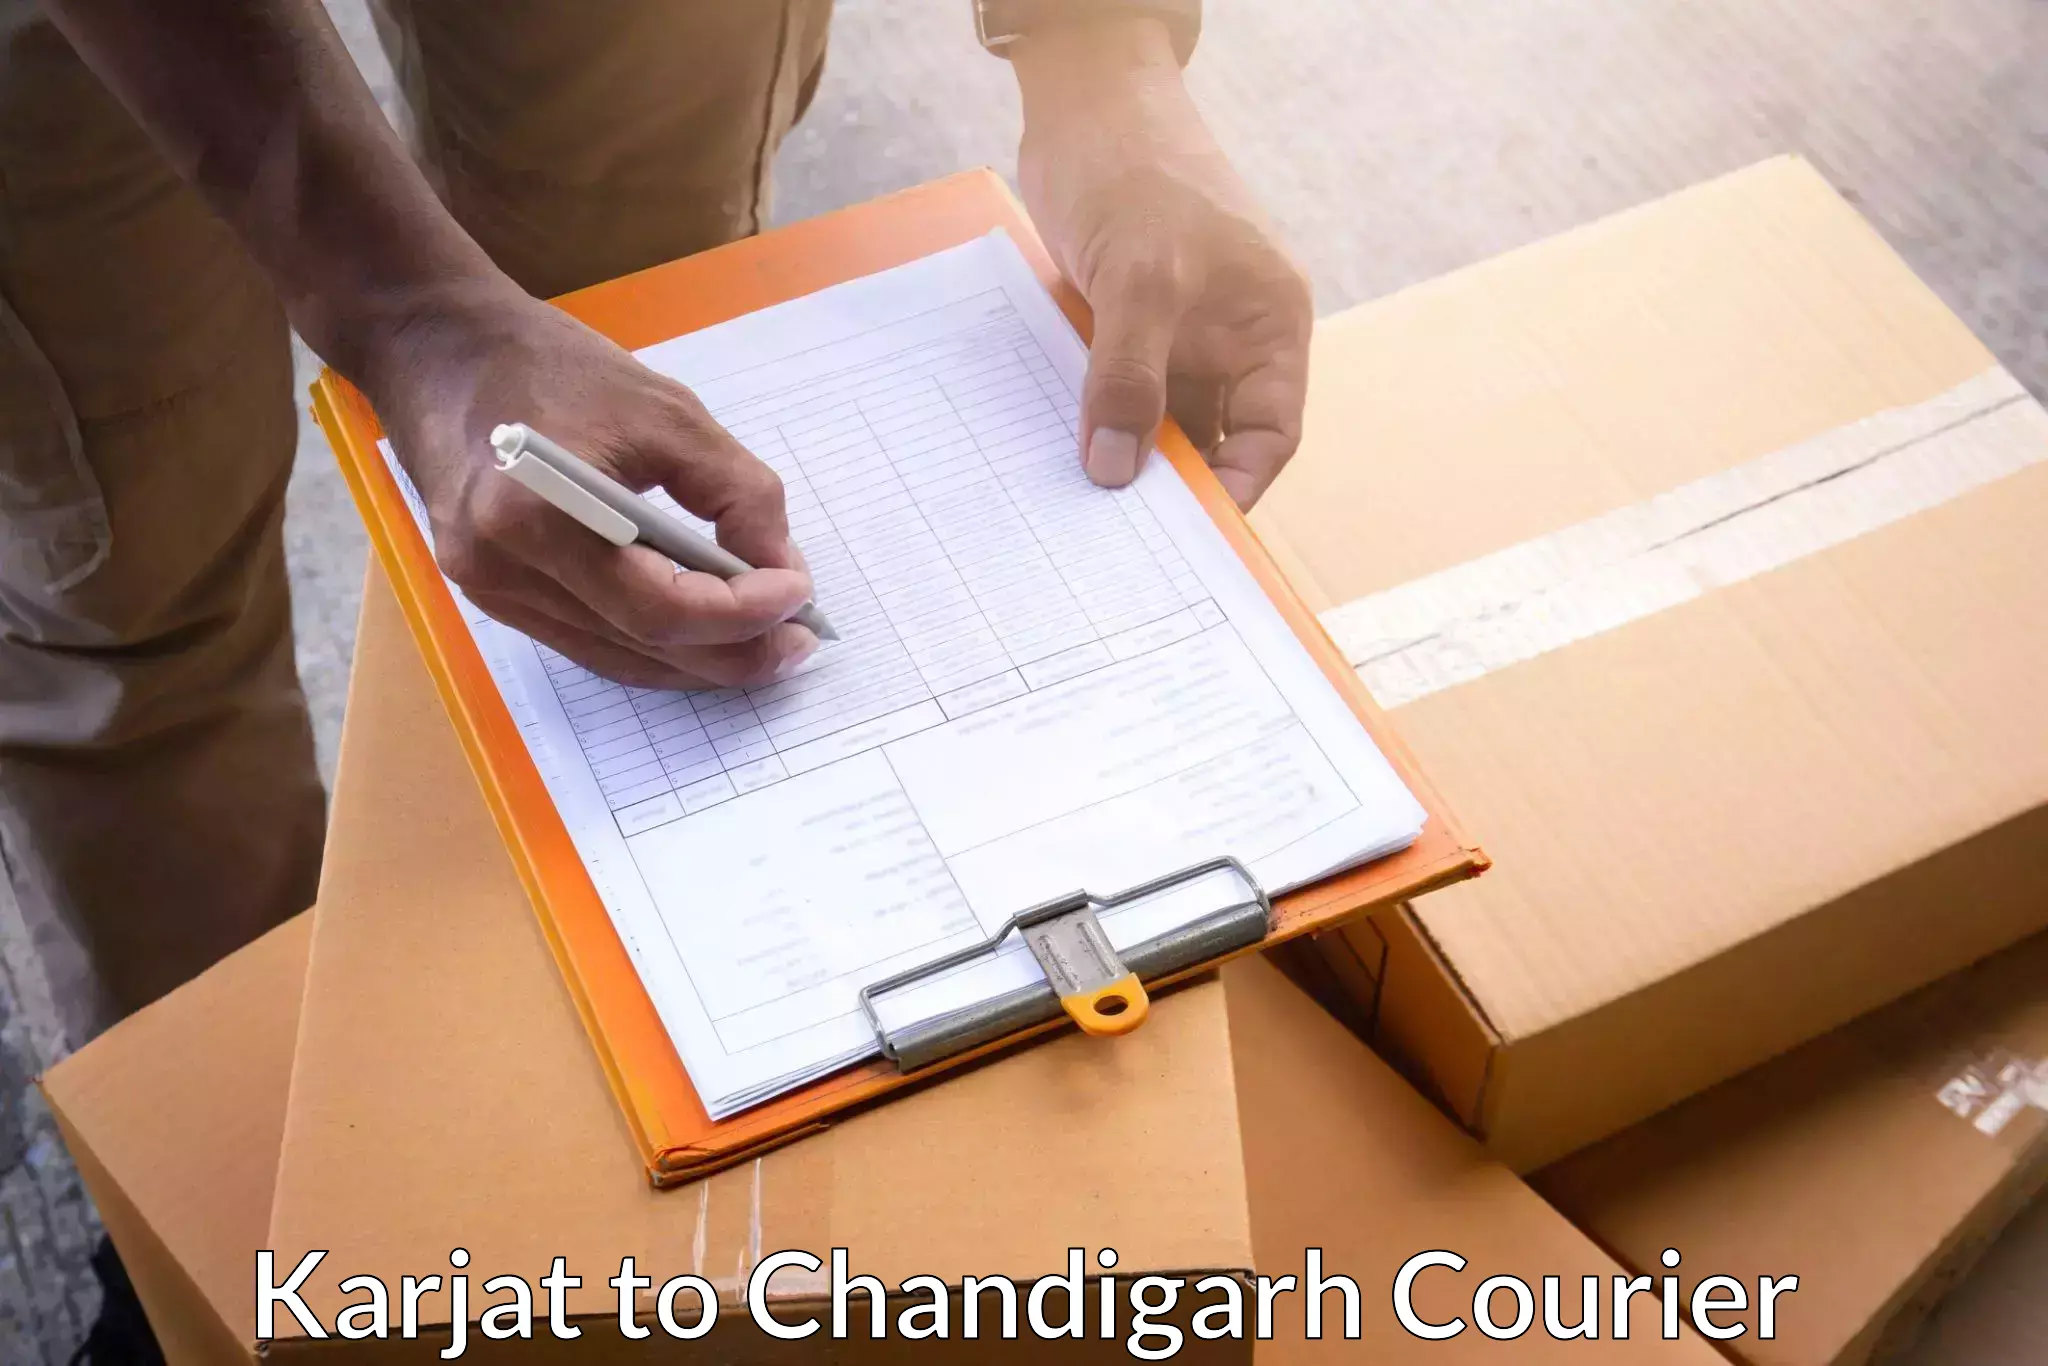 Cargo courier service Karjat to Chandigarh